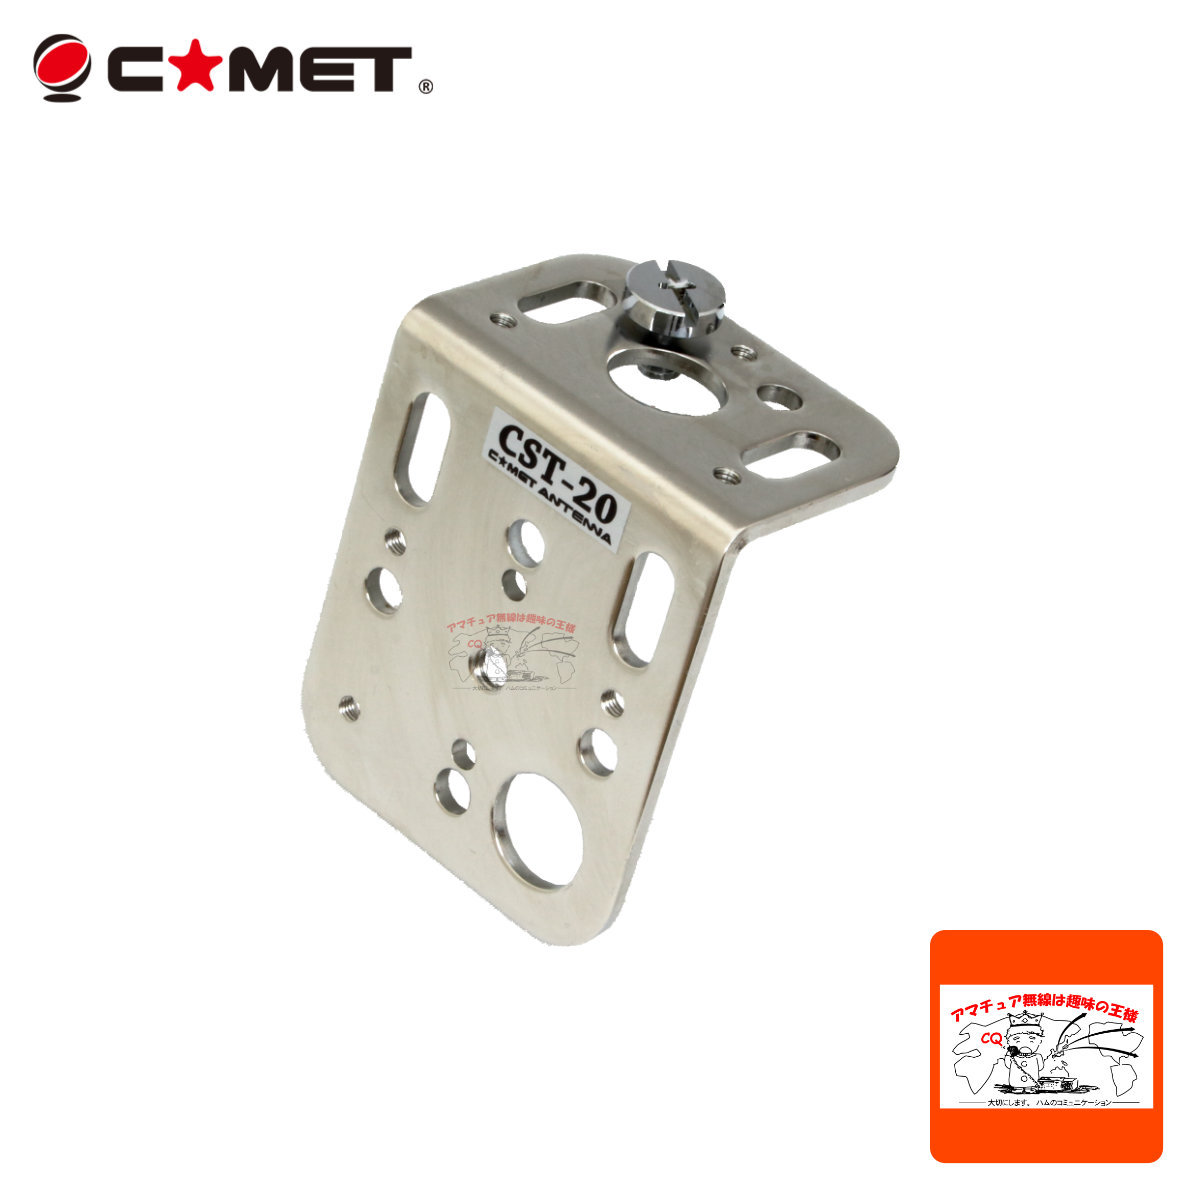 COMET（無線） COMET マルチユースアンテナ取り付け金具 CST20 アマチュア無線用品の商品画像